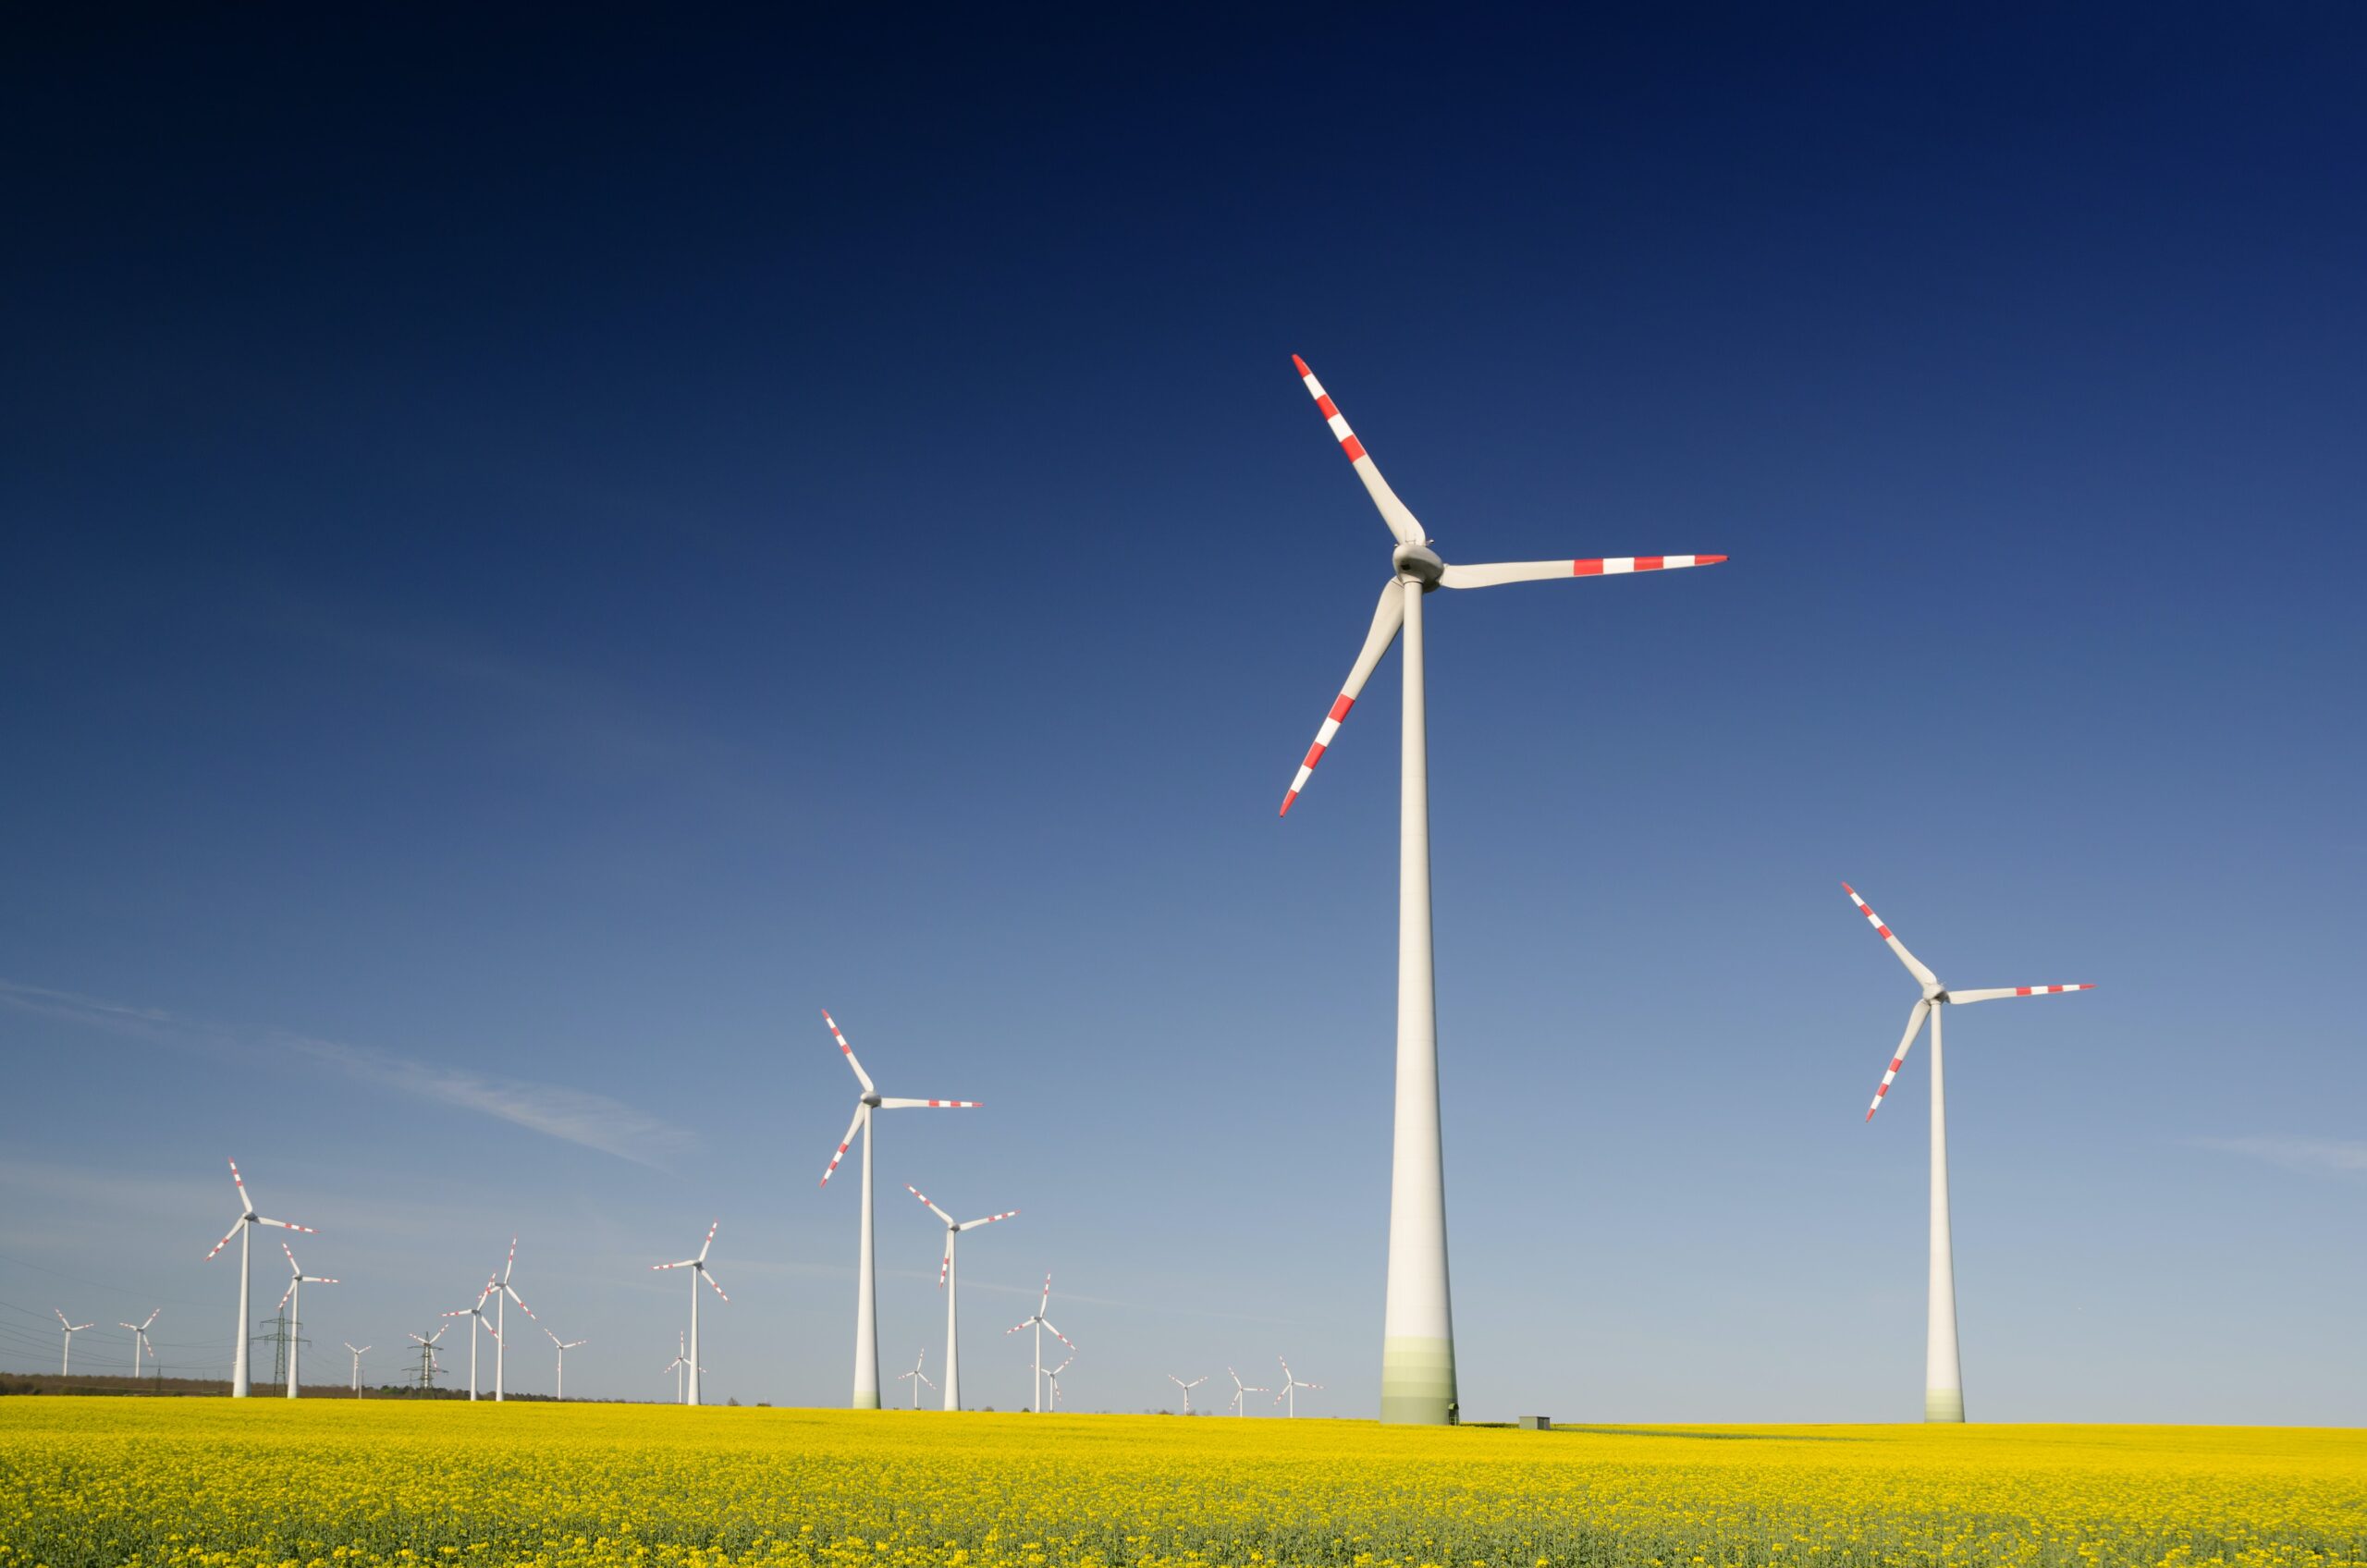 Role of Gear Technology in Improving Wind Turbine Efficiency